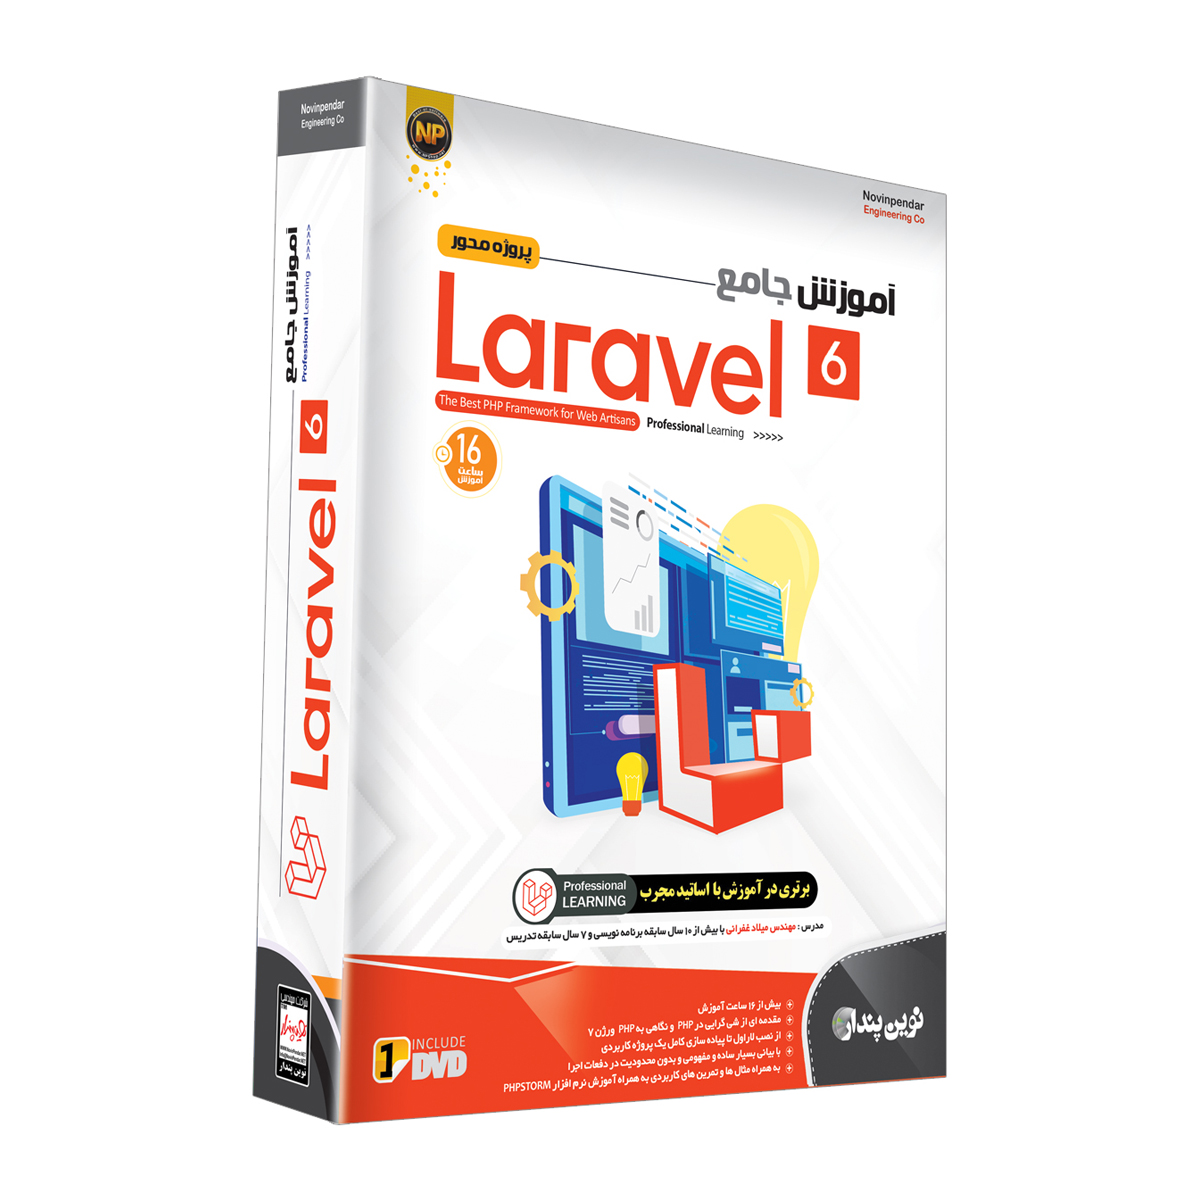  مجموعه نرم افزار آموزش جامع پروژه محور Laravel نشر نوین پندار